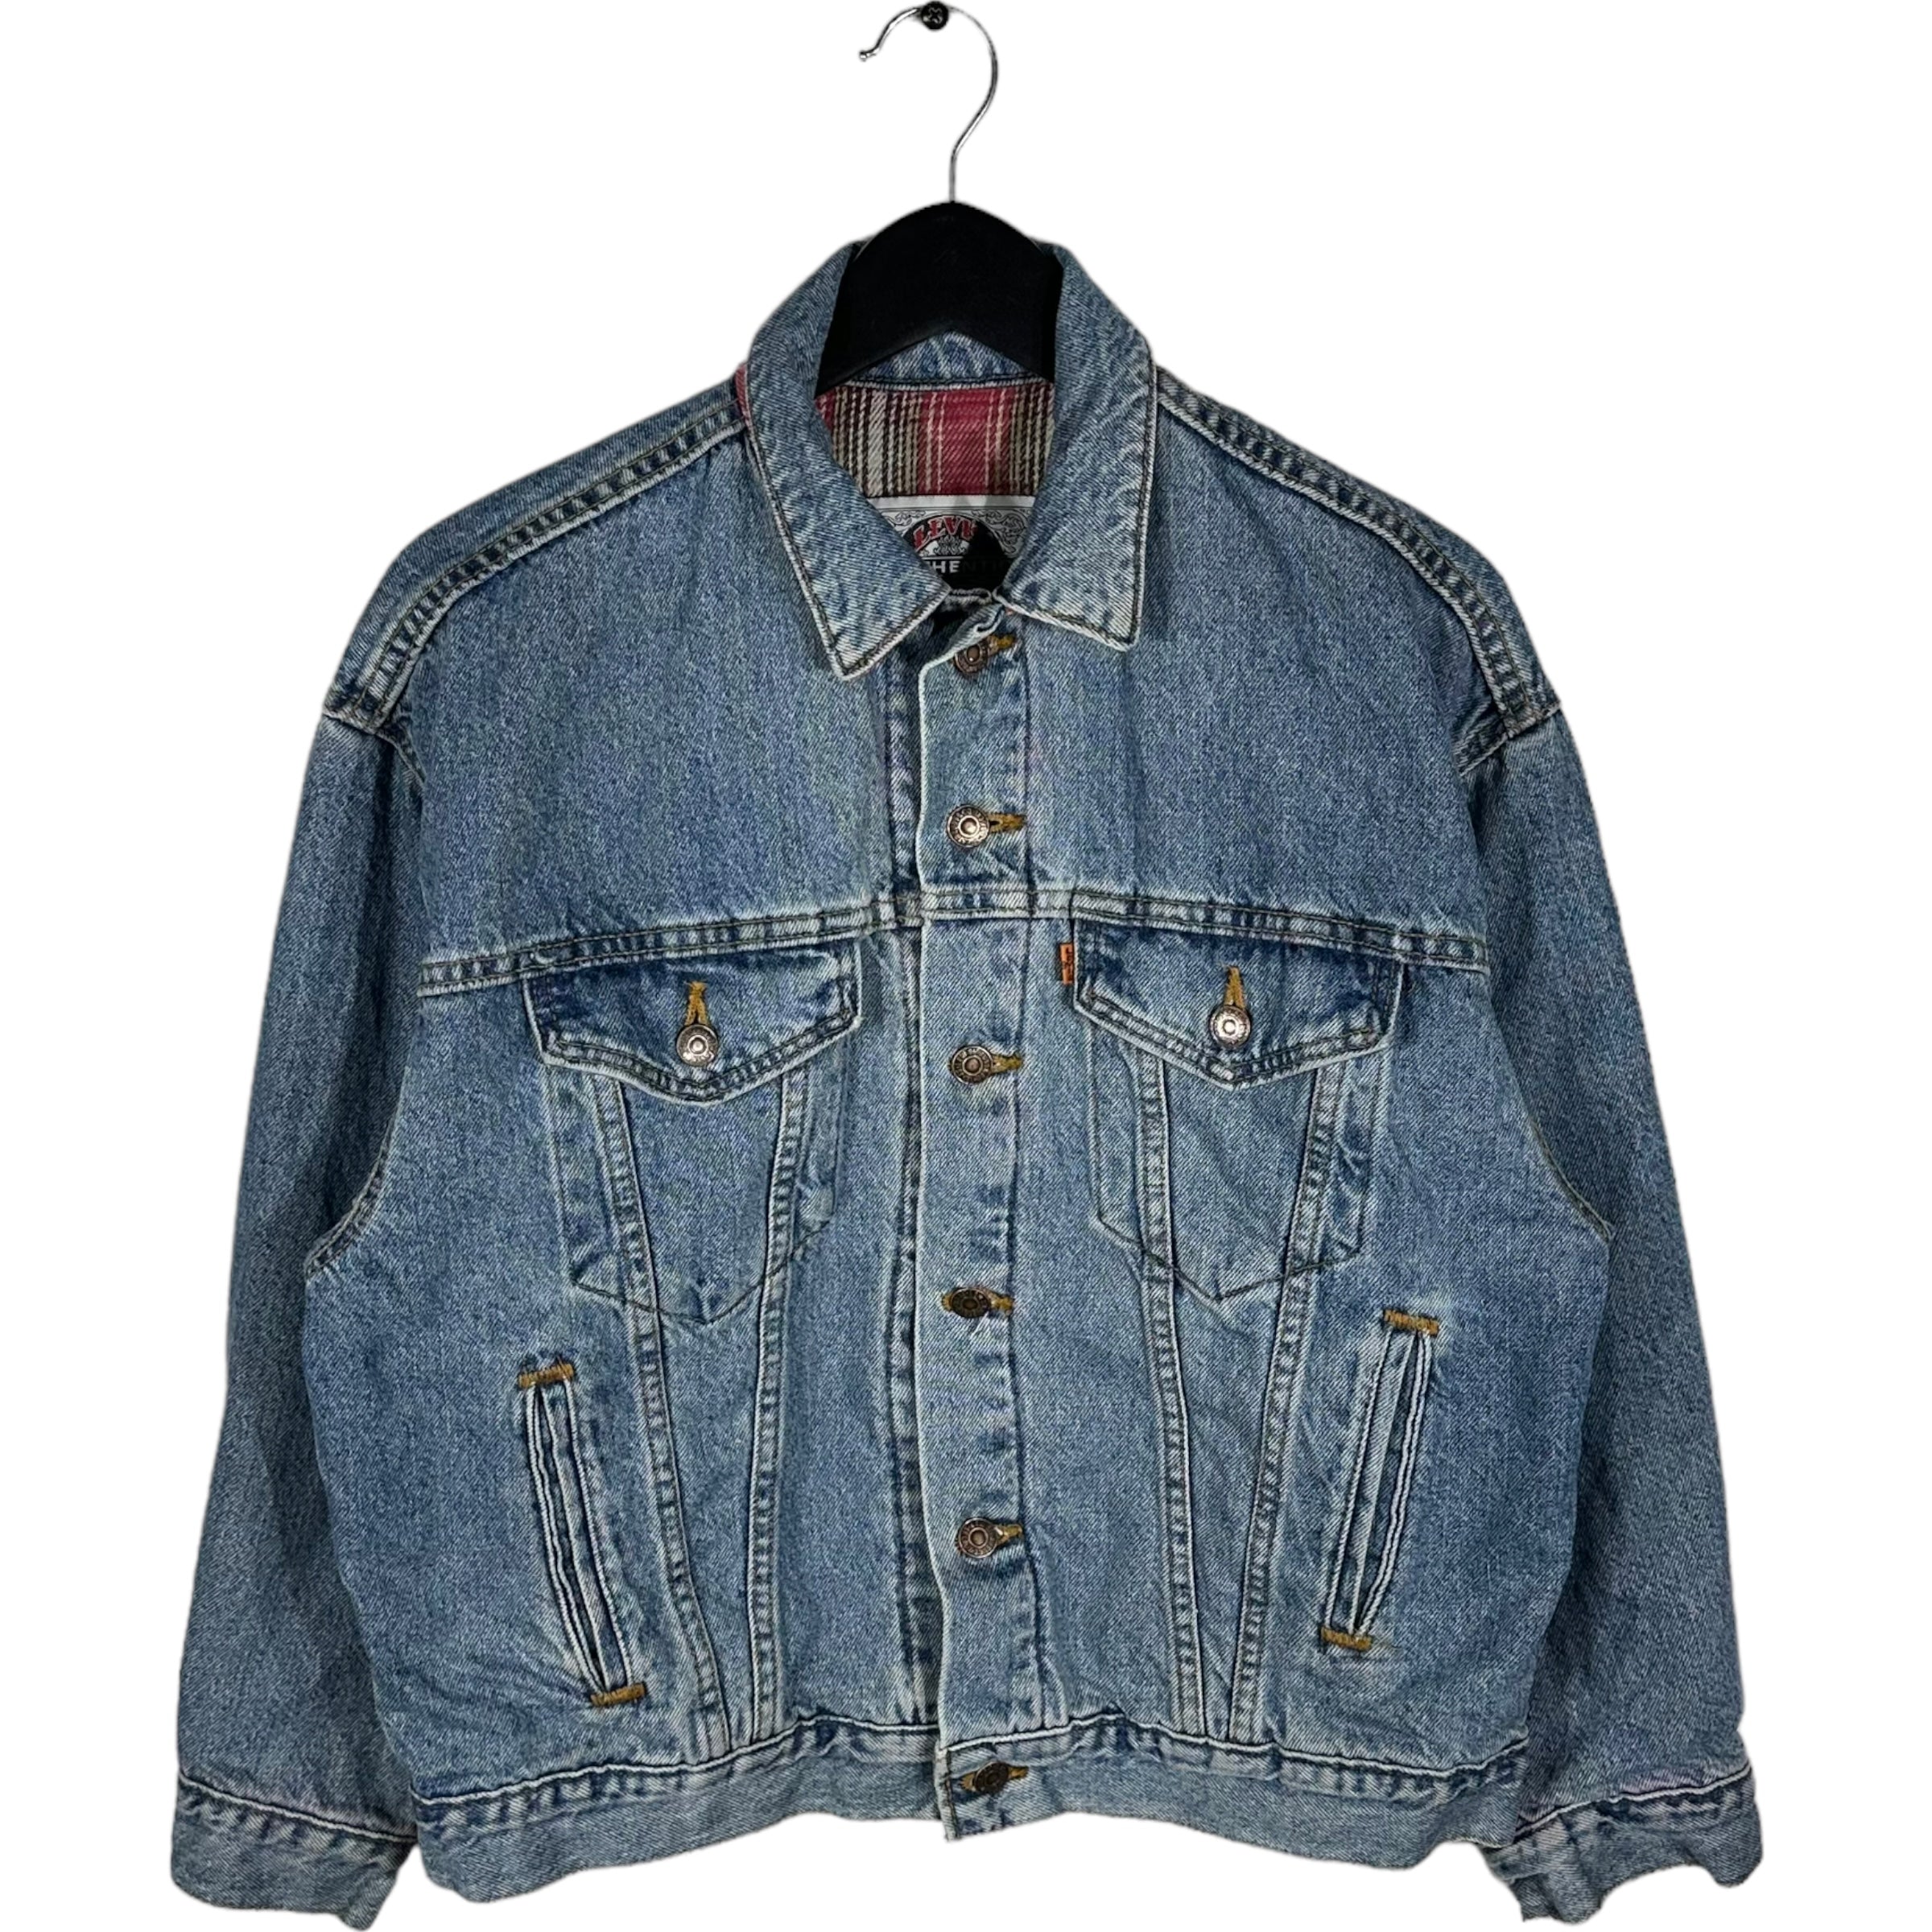 Vintage Levis Flannel Lined Denim Jacket